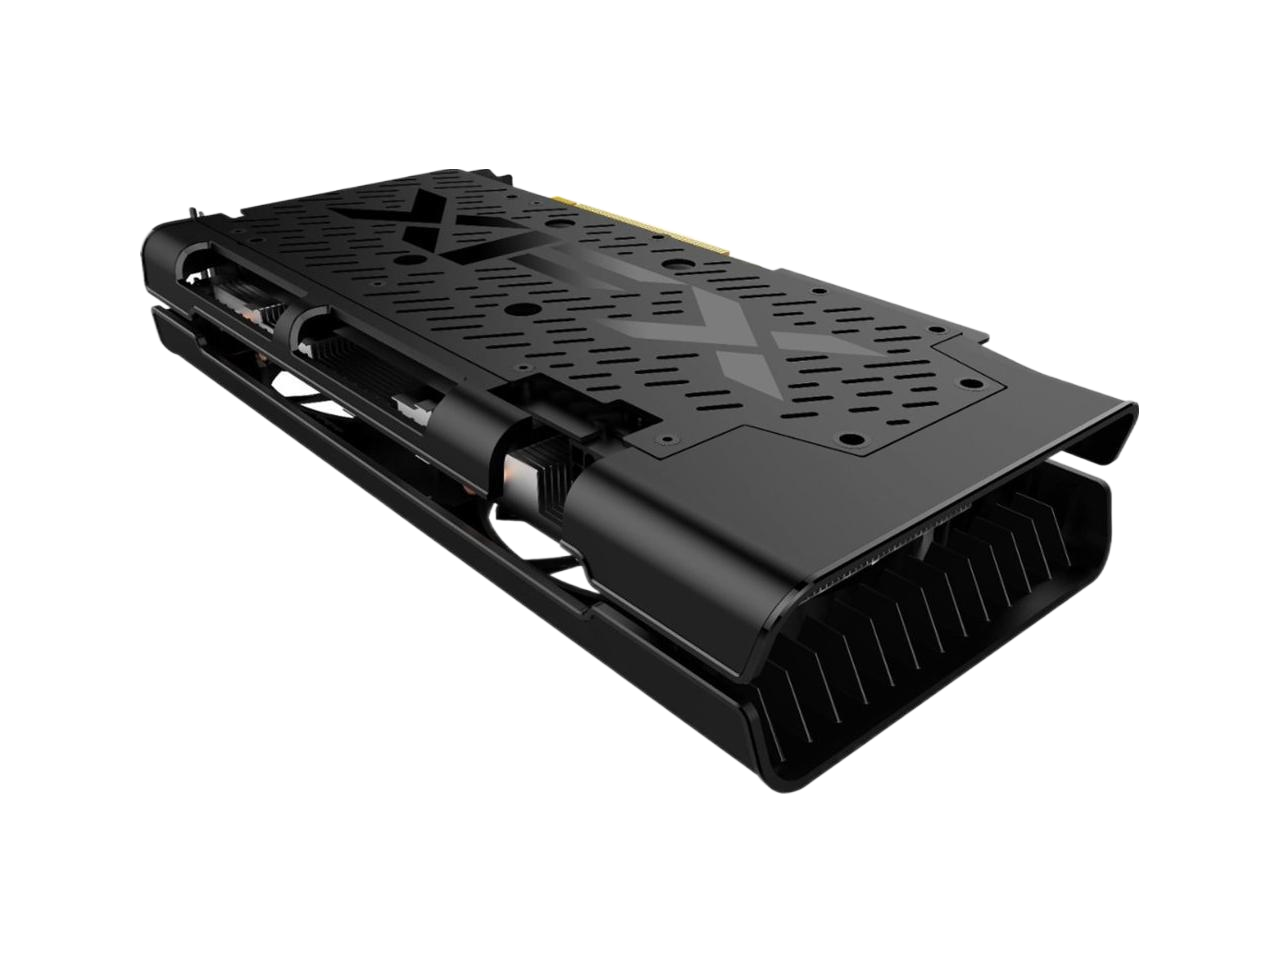 XFX - THICC II Pro AMD Radeon RX 5500 XT 8GB GDDR6 PCI Express 4.0 Graphics Card Black RX-55XT8DFDR